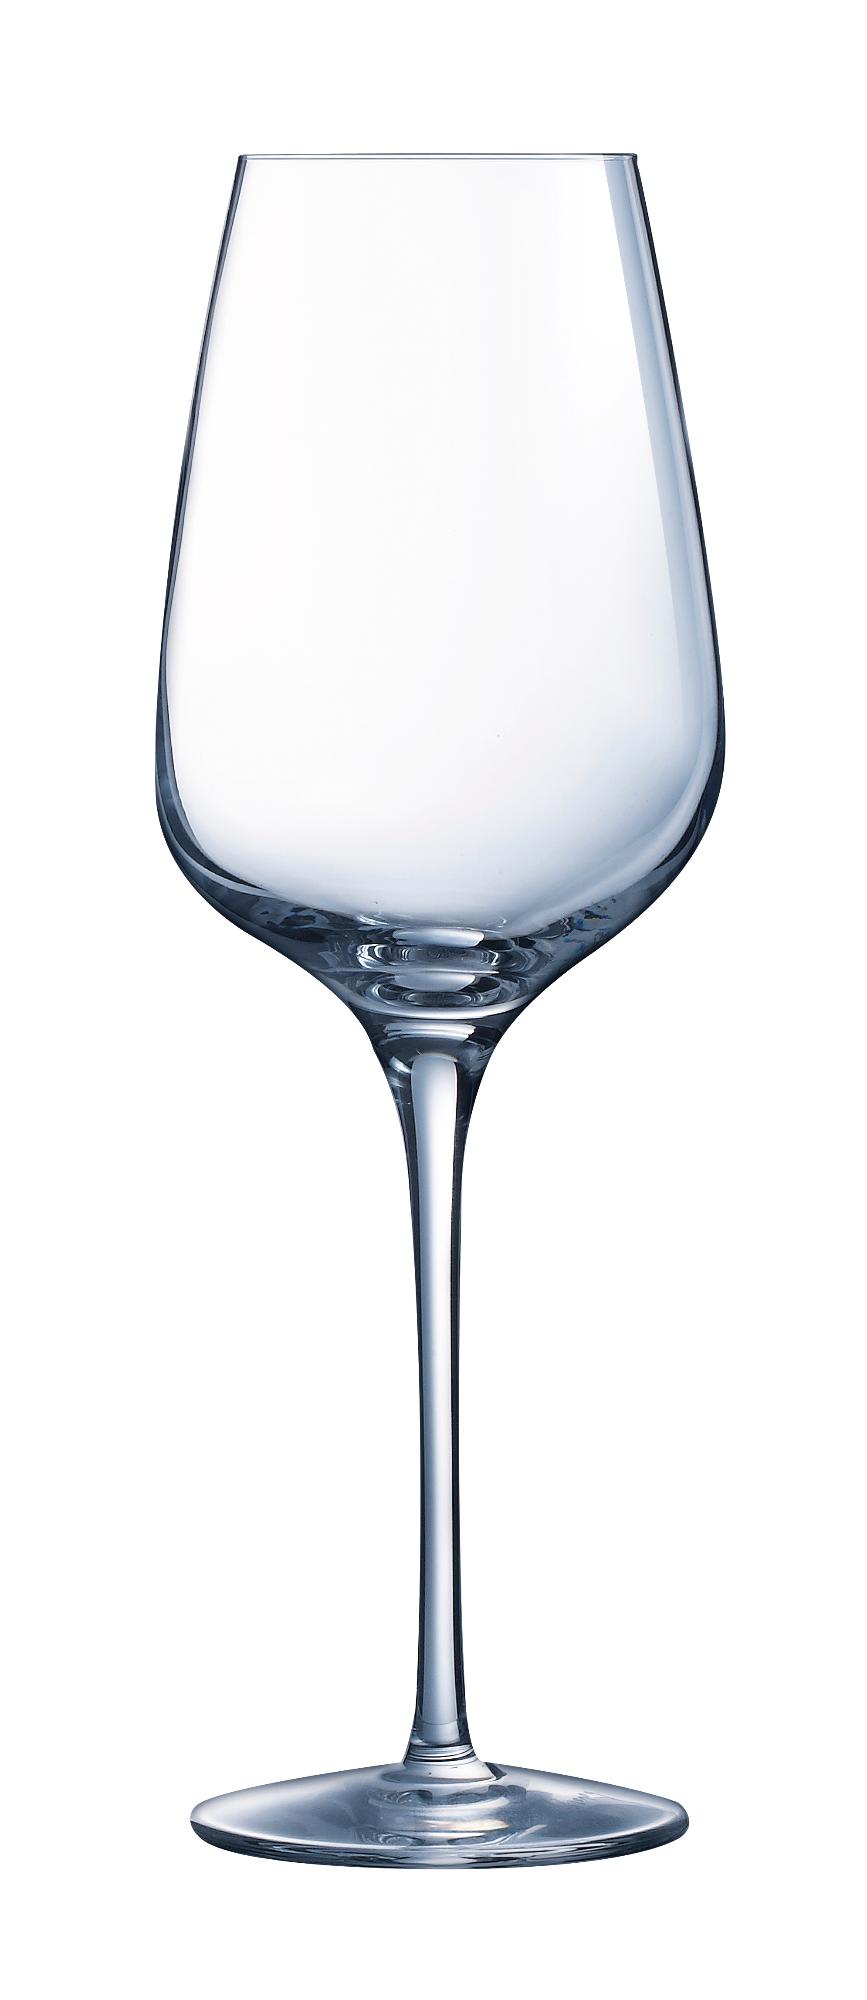 Sublym wine glass, 450ml